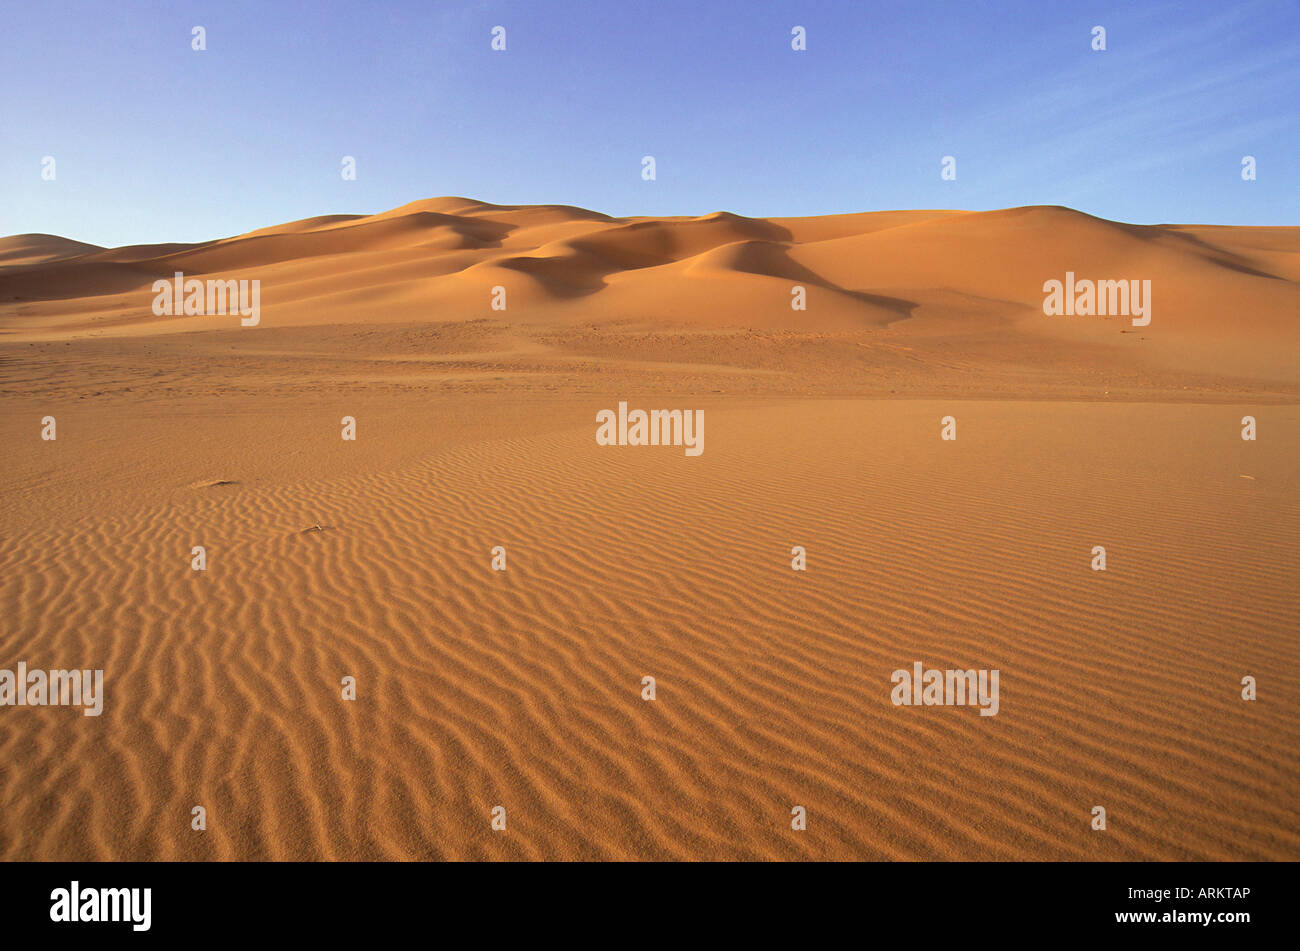 Ripples in sand and sand dunes, Erg Murzuq, Sahara Desert, Fezzan, Libya, North Africa, Africa Stock Photo